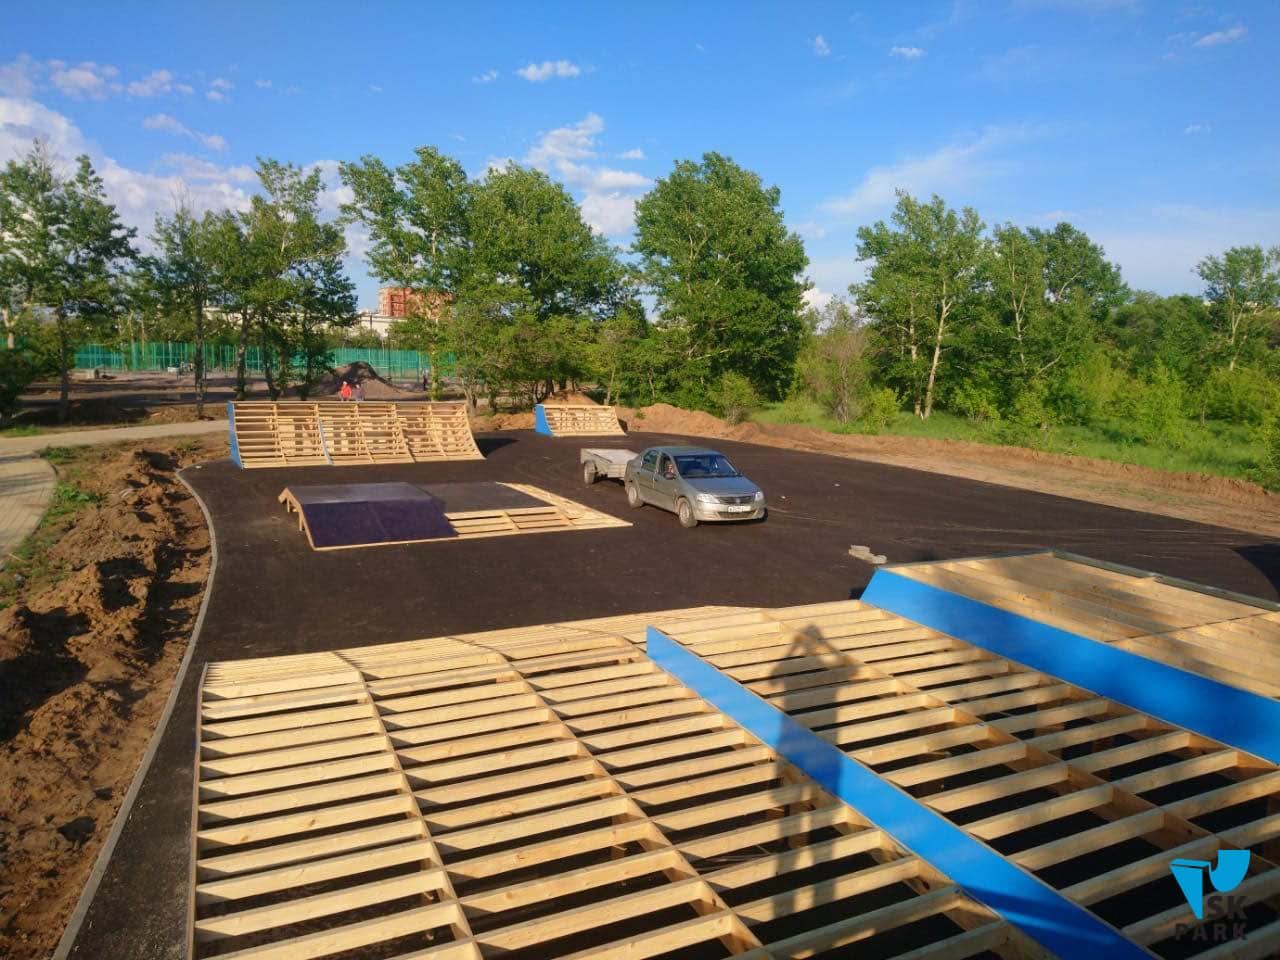 Компания SK PARK ведет строительство скейтпарка в г. Караганде, РК